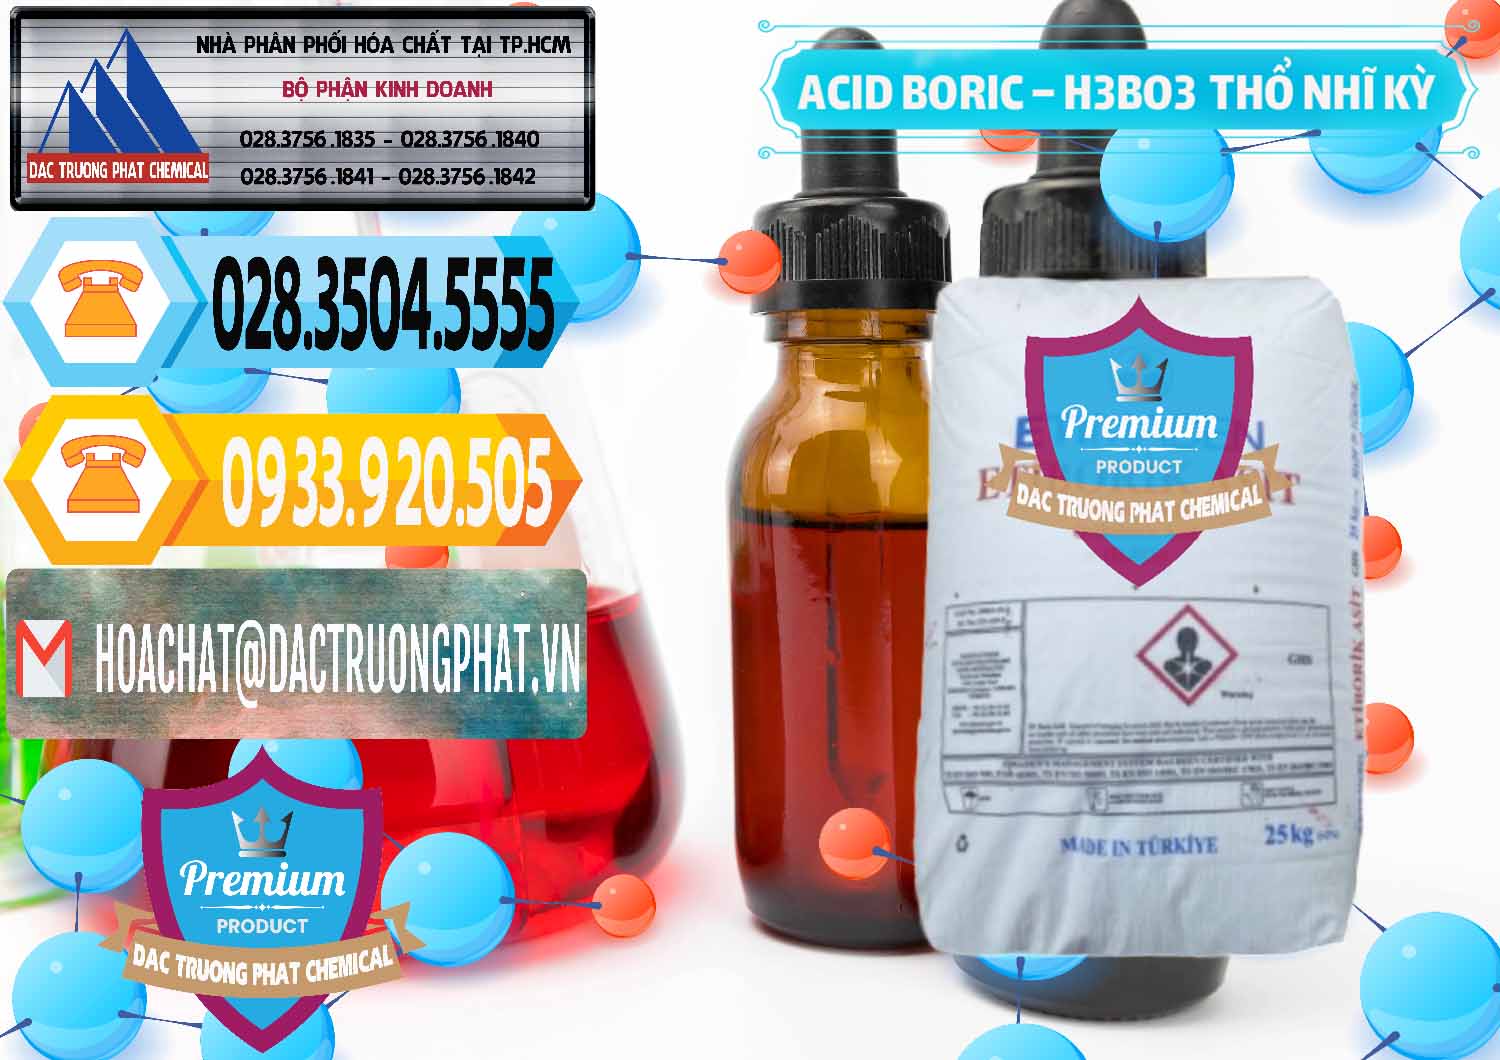 Đơn vị chuyên bán ( cung cấp ) Acid Boric – Axit Boric H3BO3 Etimaden Thổ Nhĩ Kỳ Turkey - 0369 - Cty chuyên cung cấp và kinh doanh hóa chất tại TP.HCM - hoachattayrua.net